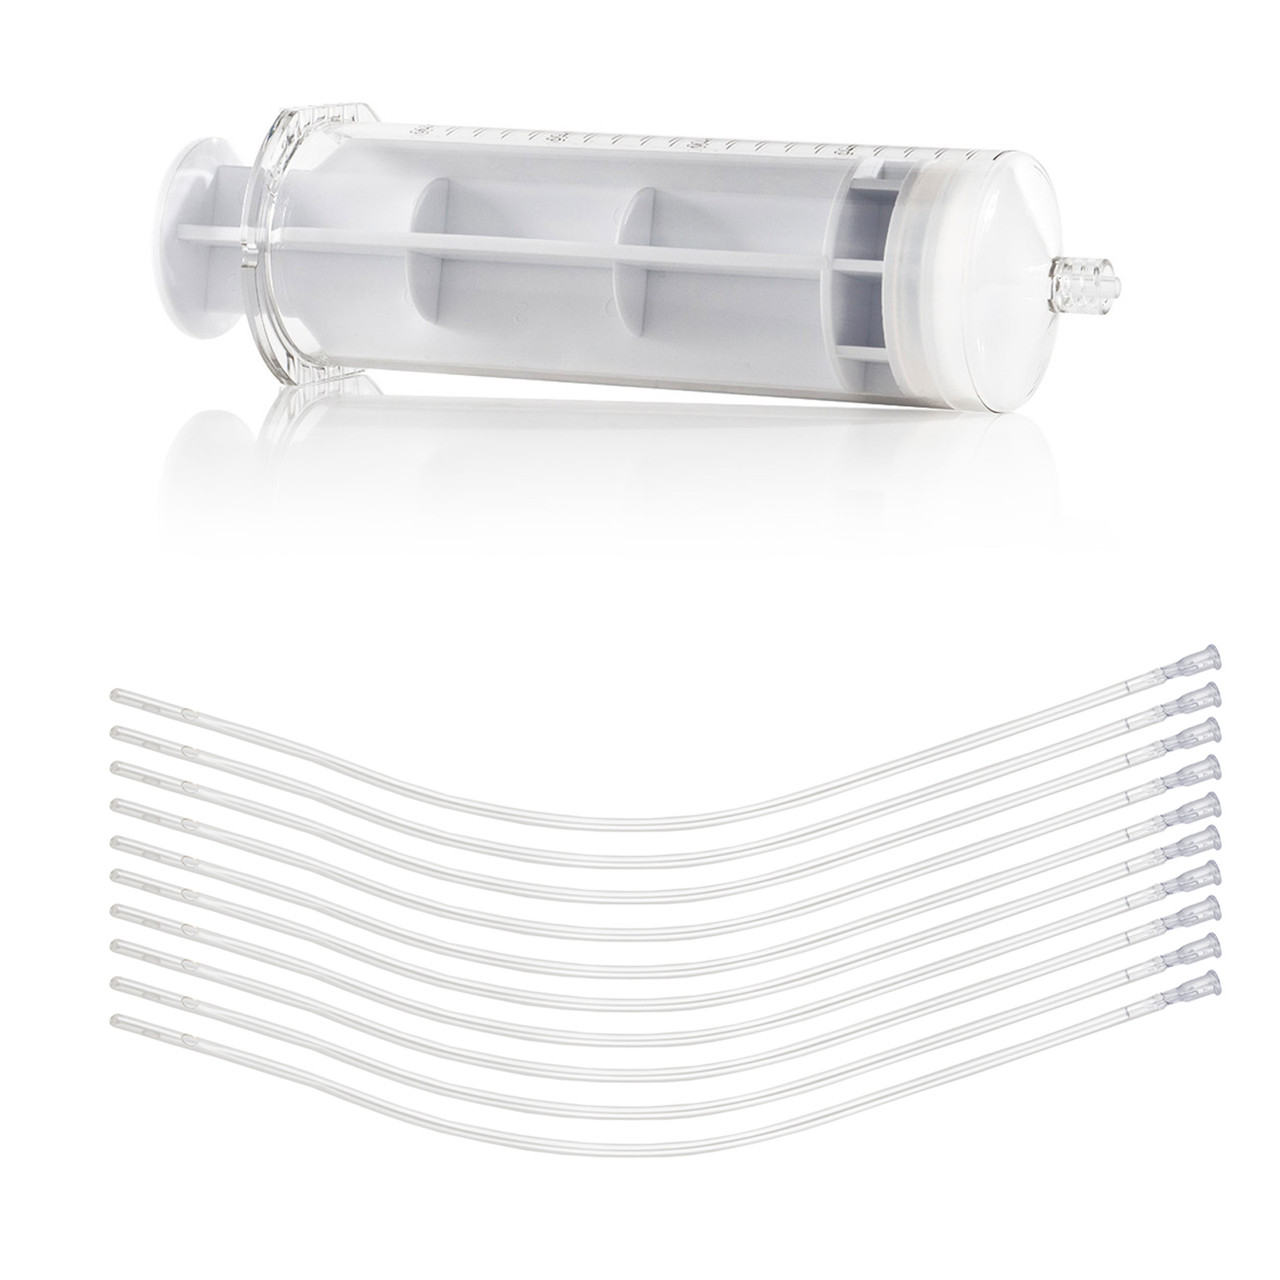 200ml Ozone Syringe and Catheters Package